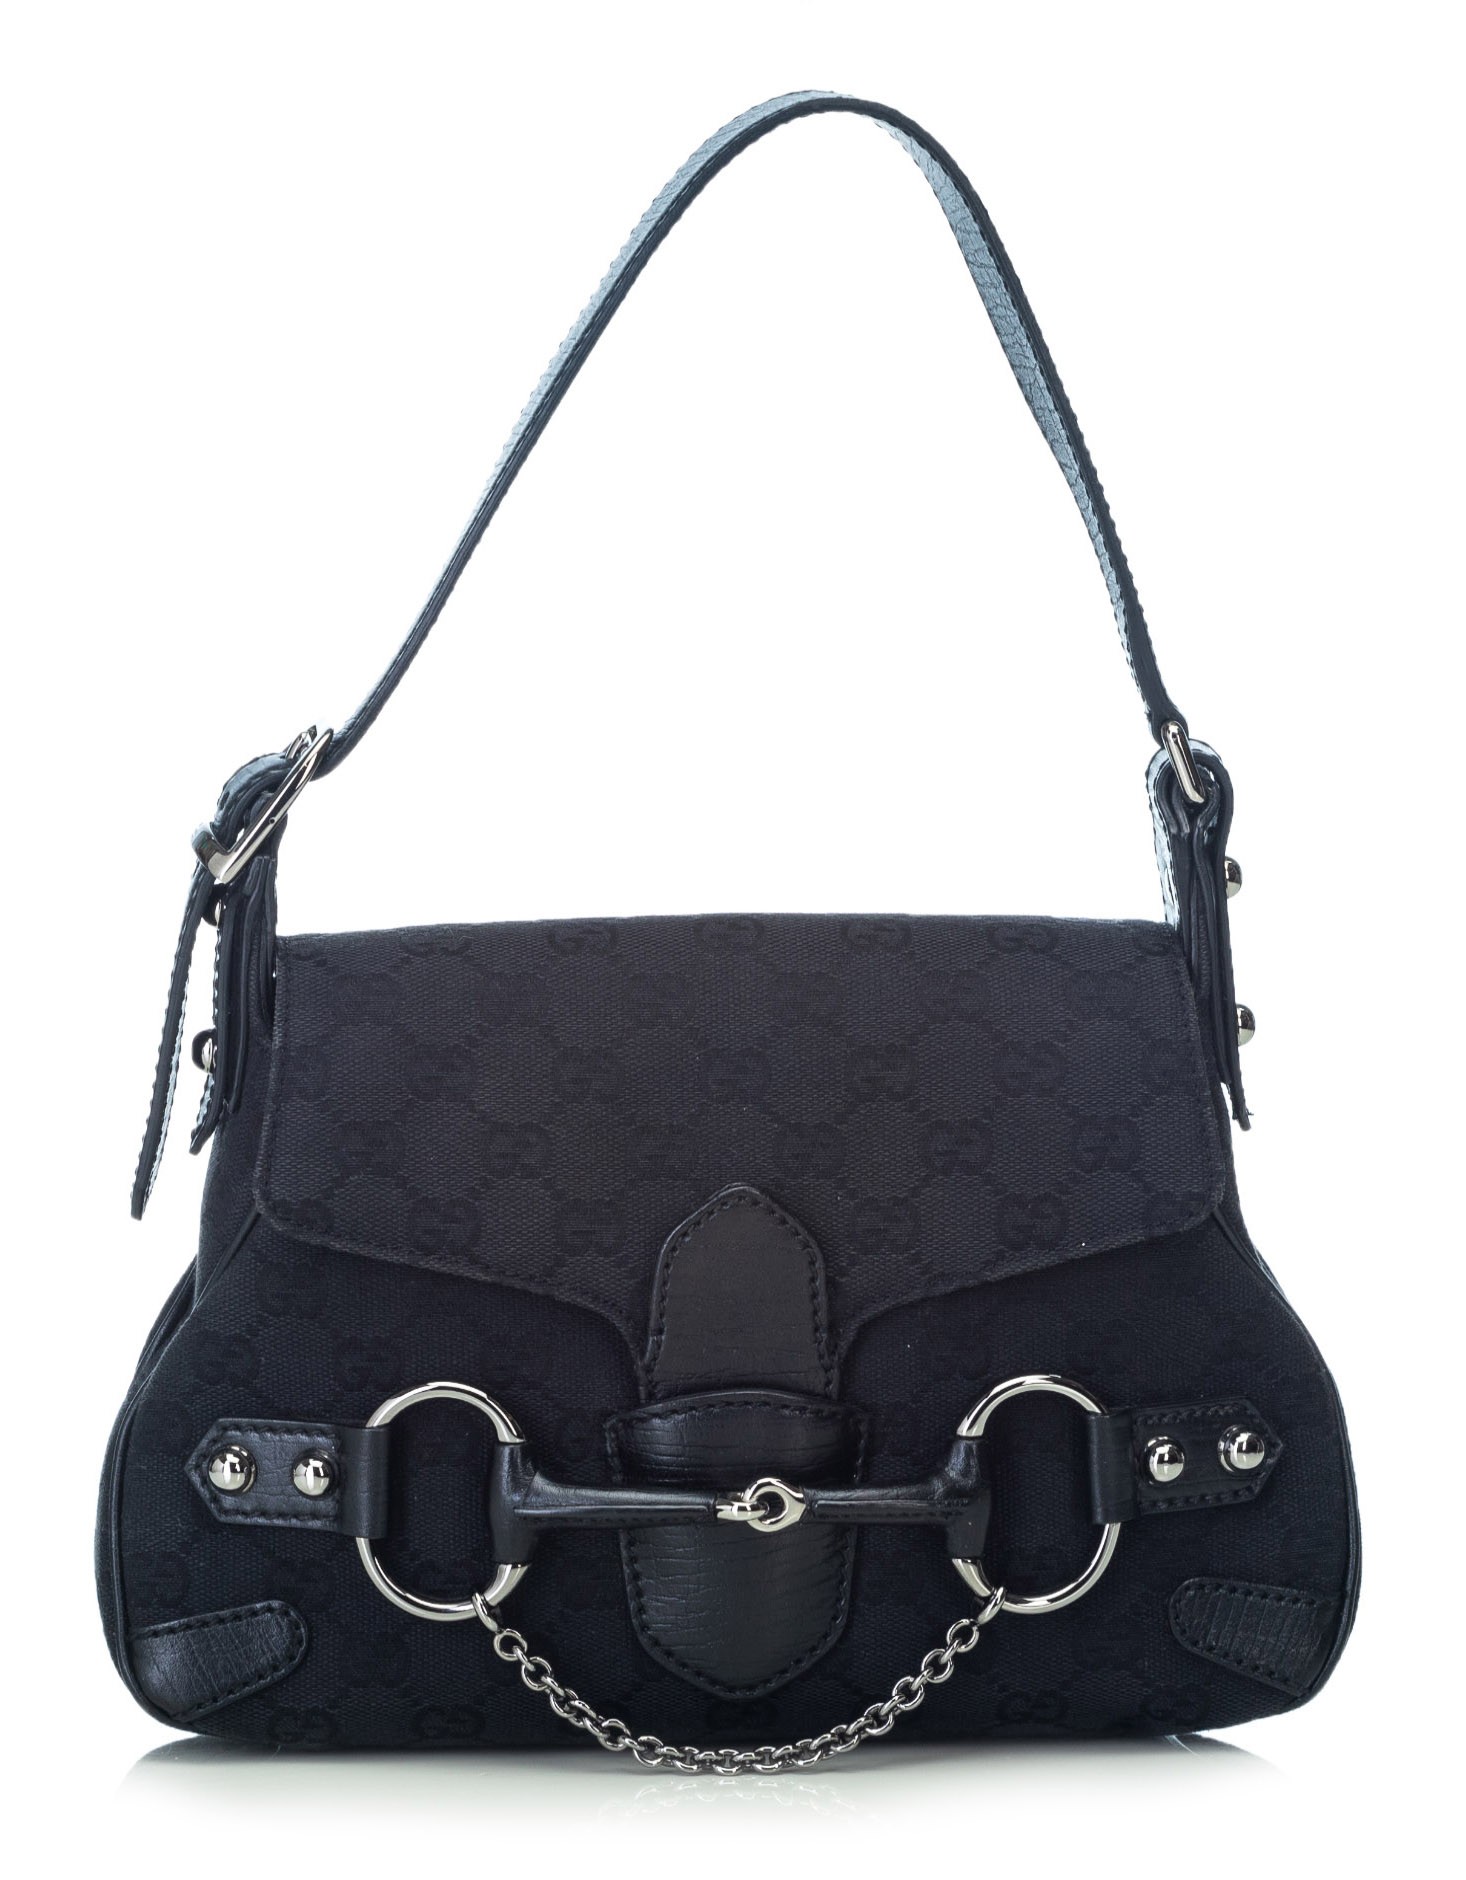 Gucci, Bags, Vintage Gucci 955 Horsebit Black Leather Purse